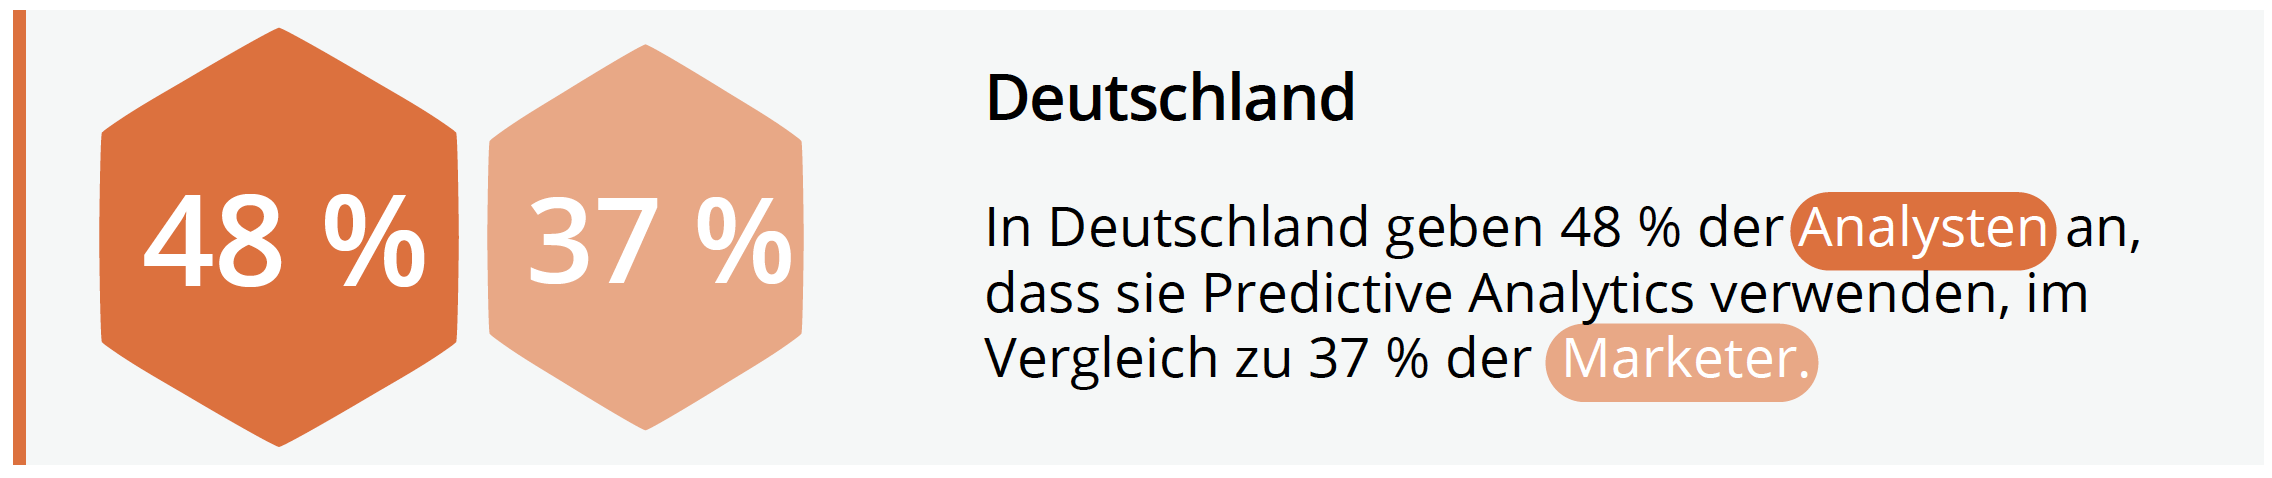 deutschland-marketing-analytics